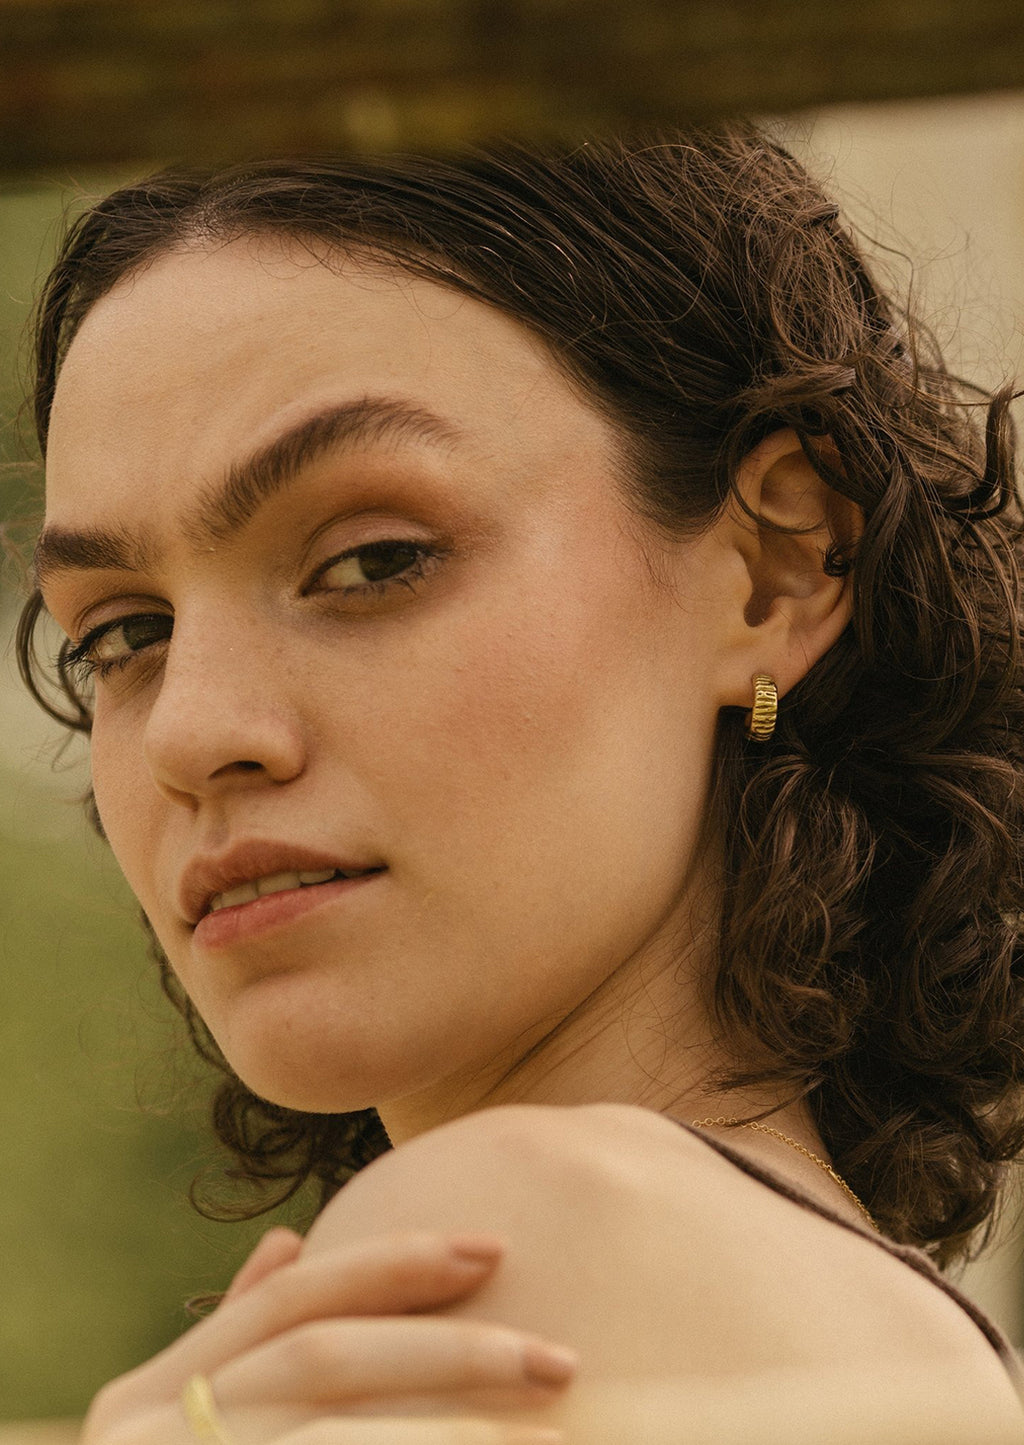 2: A woman wearing brass earrings.